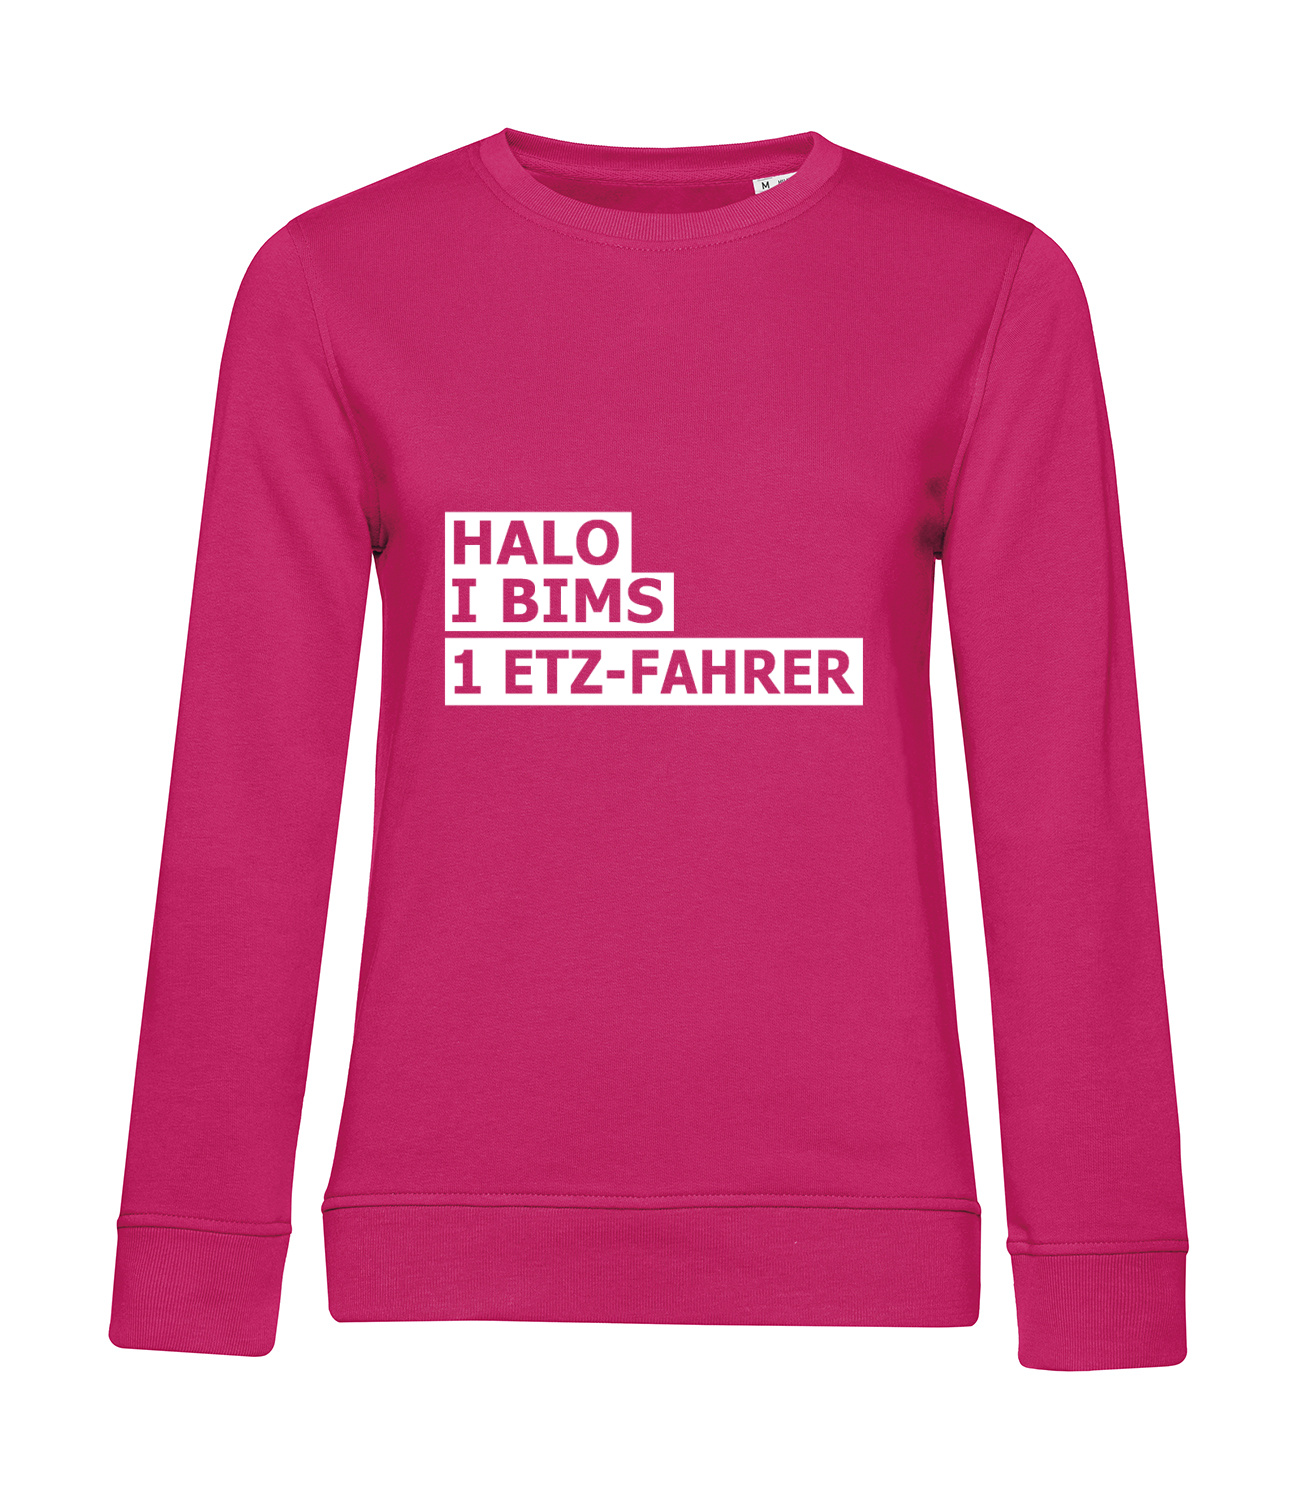 Nachhaltiges Sweatshirt Damen 2Takter - Halo I bims 1 ETZ-Fahrer